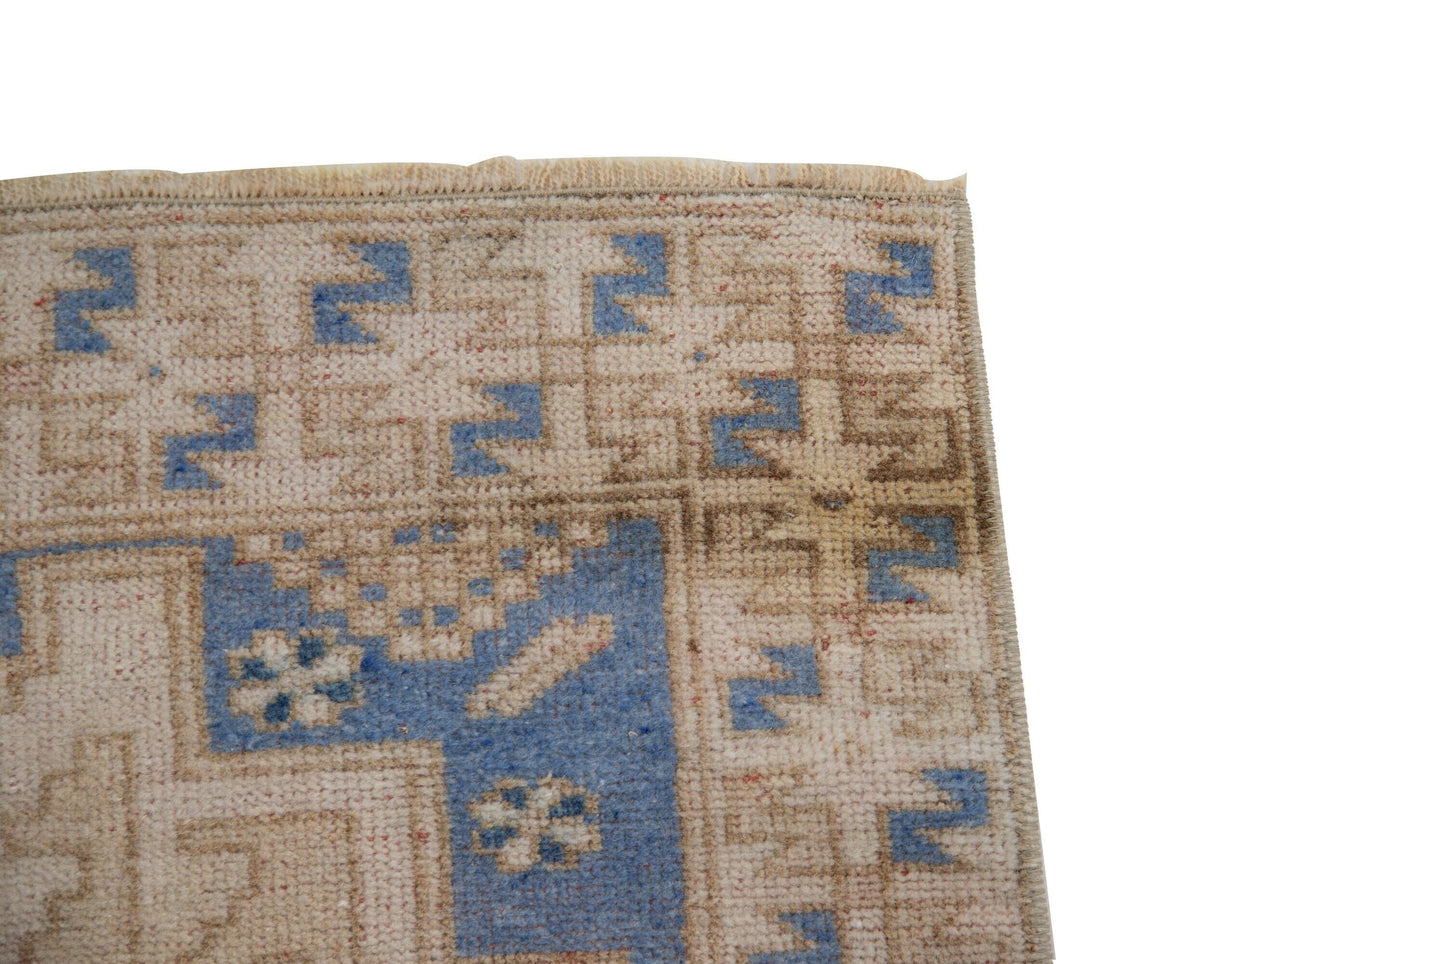 Beige Blue Turkish Small rug, 3x4 Vintage Oushak rug, Handmade Rug ,Bedroom rug, Nursery rug, Kid room rug, Coastal decor, 7476